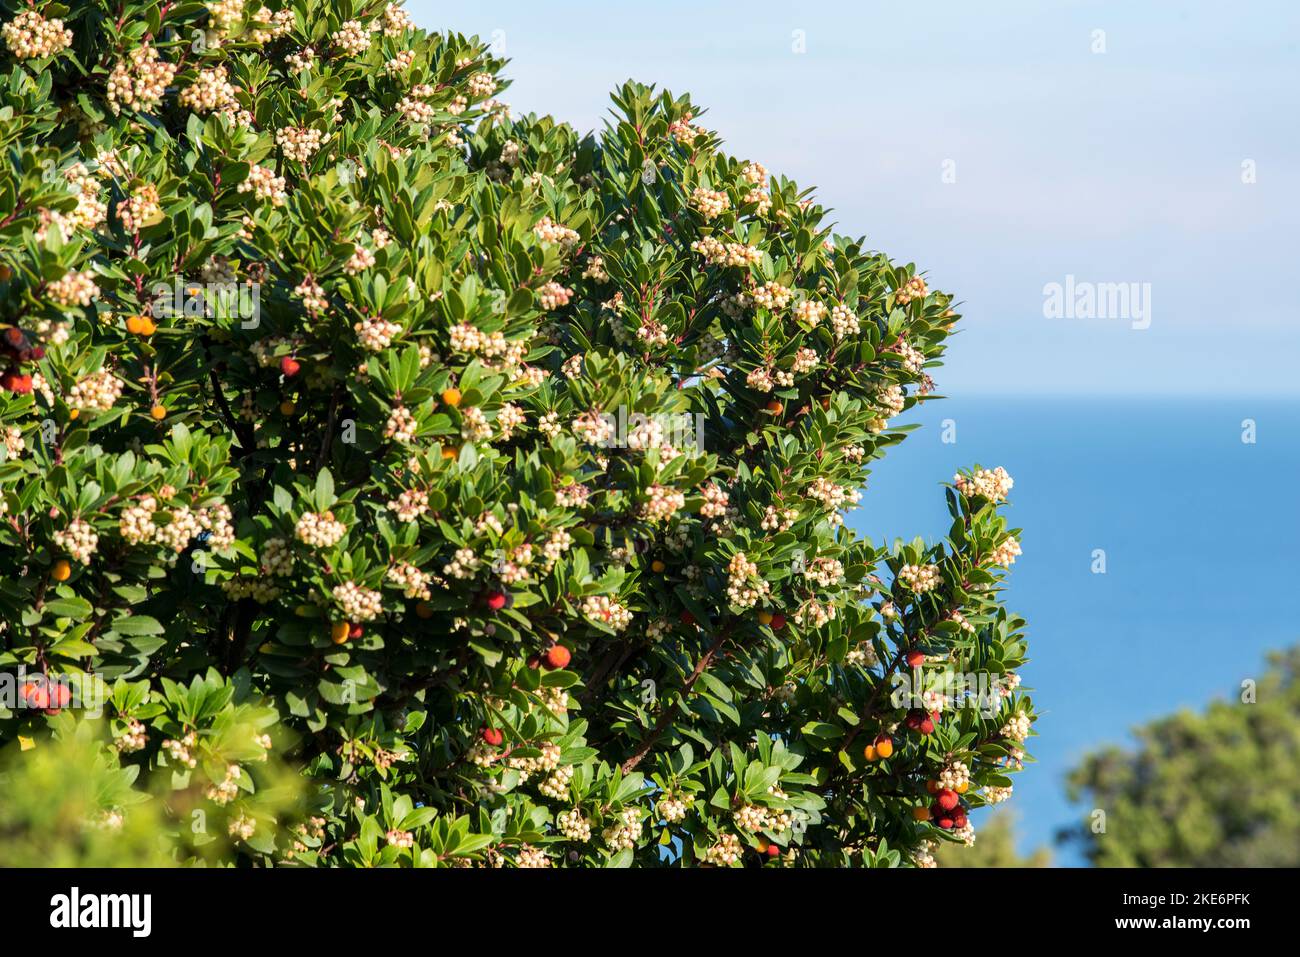 Il corbezzolo, è uno degli arbusti più rappresentativi della macchia mediterranea. Dai suoi frutti, si ottiene un'ottima marmellata. Stock Photo